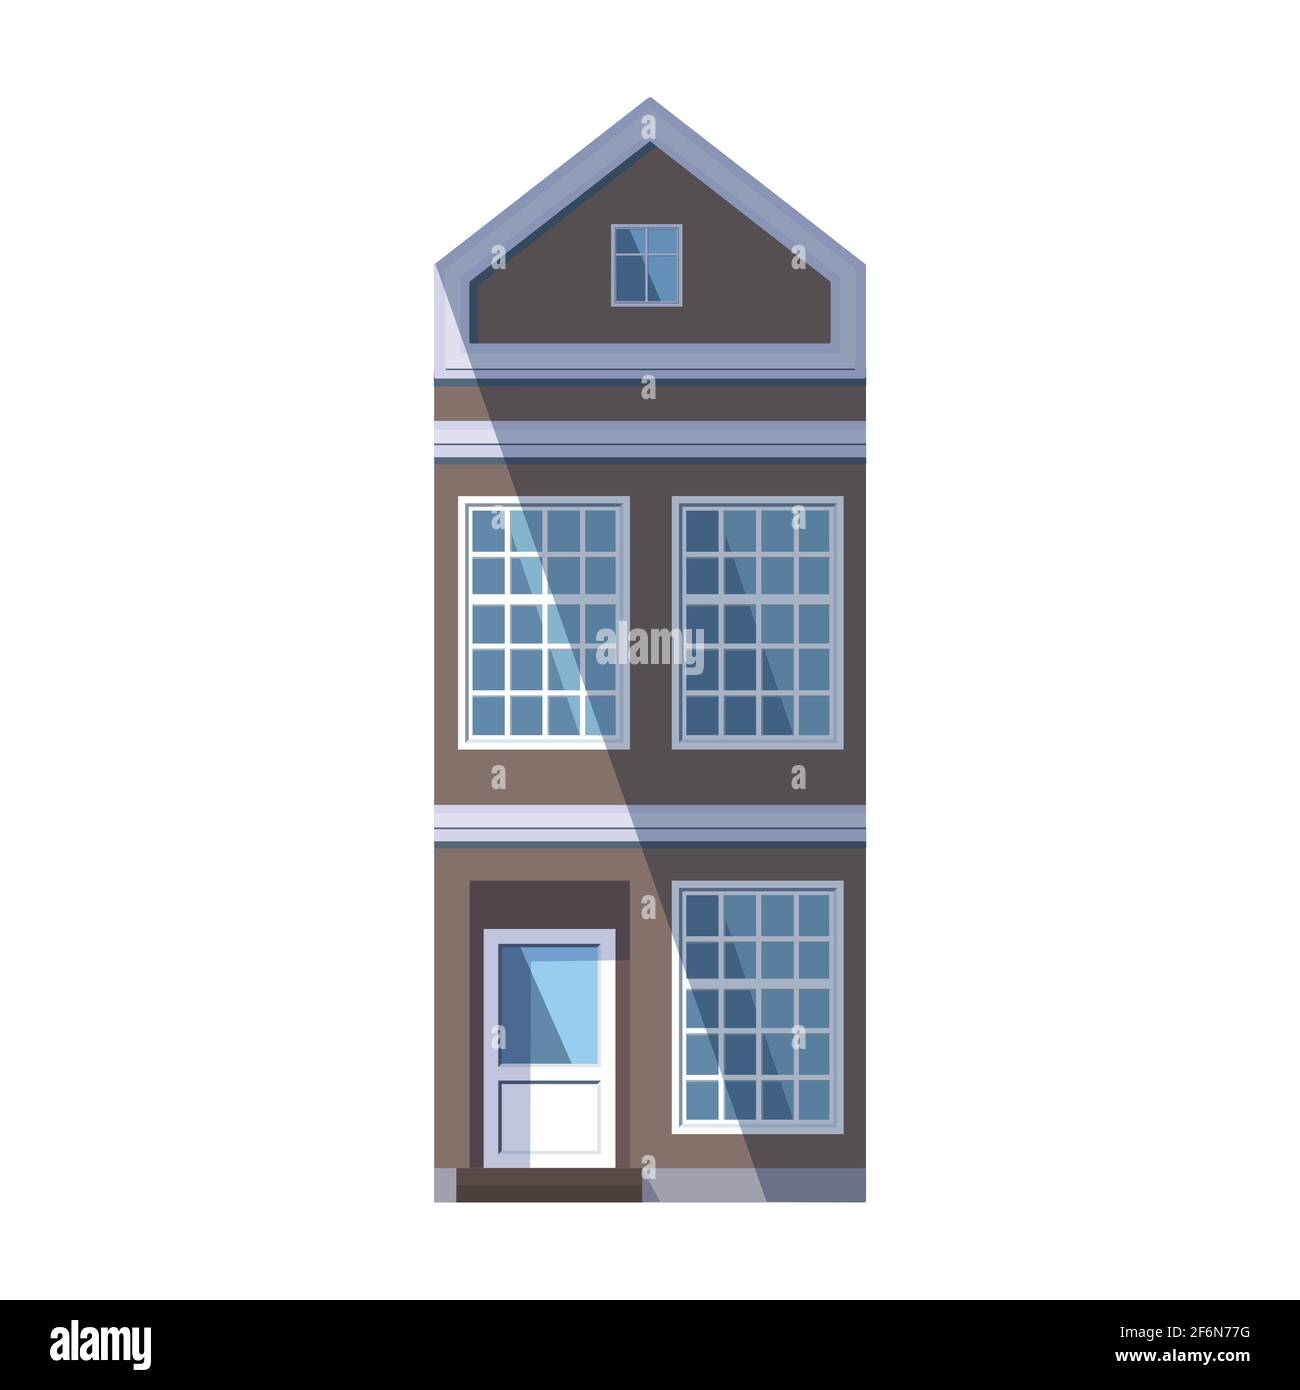 Ancienne maison marron européenne dans le style traditionnel de la ville hollandaise avec un toit de pignon, une fenêtre carrée mansardée et de grandes fenêtres de style loft. Illustration vectorielle Illustration de Vecteur